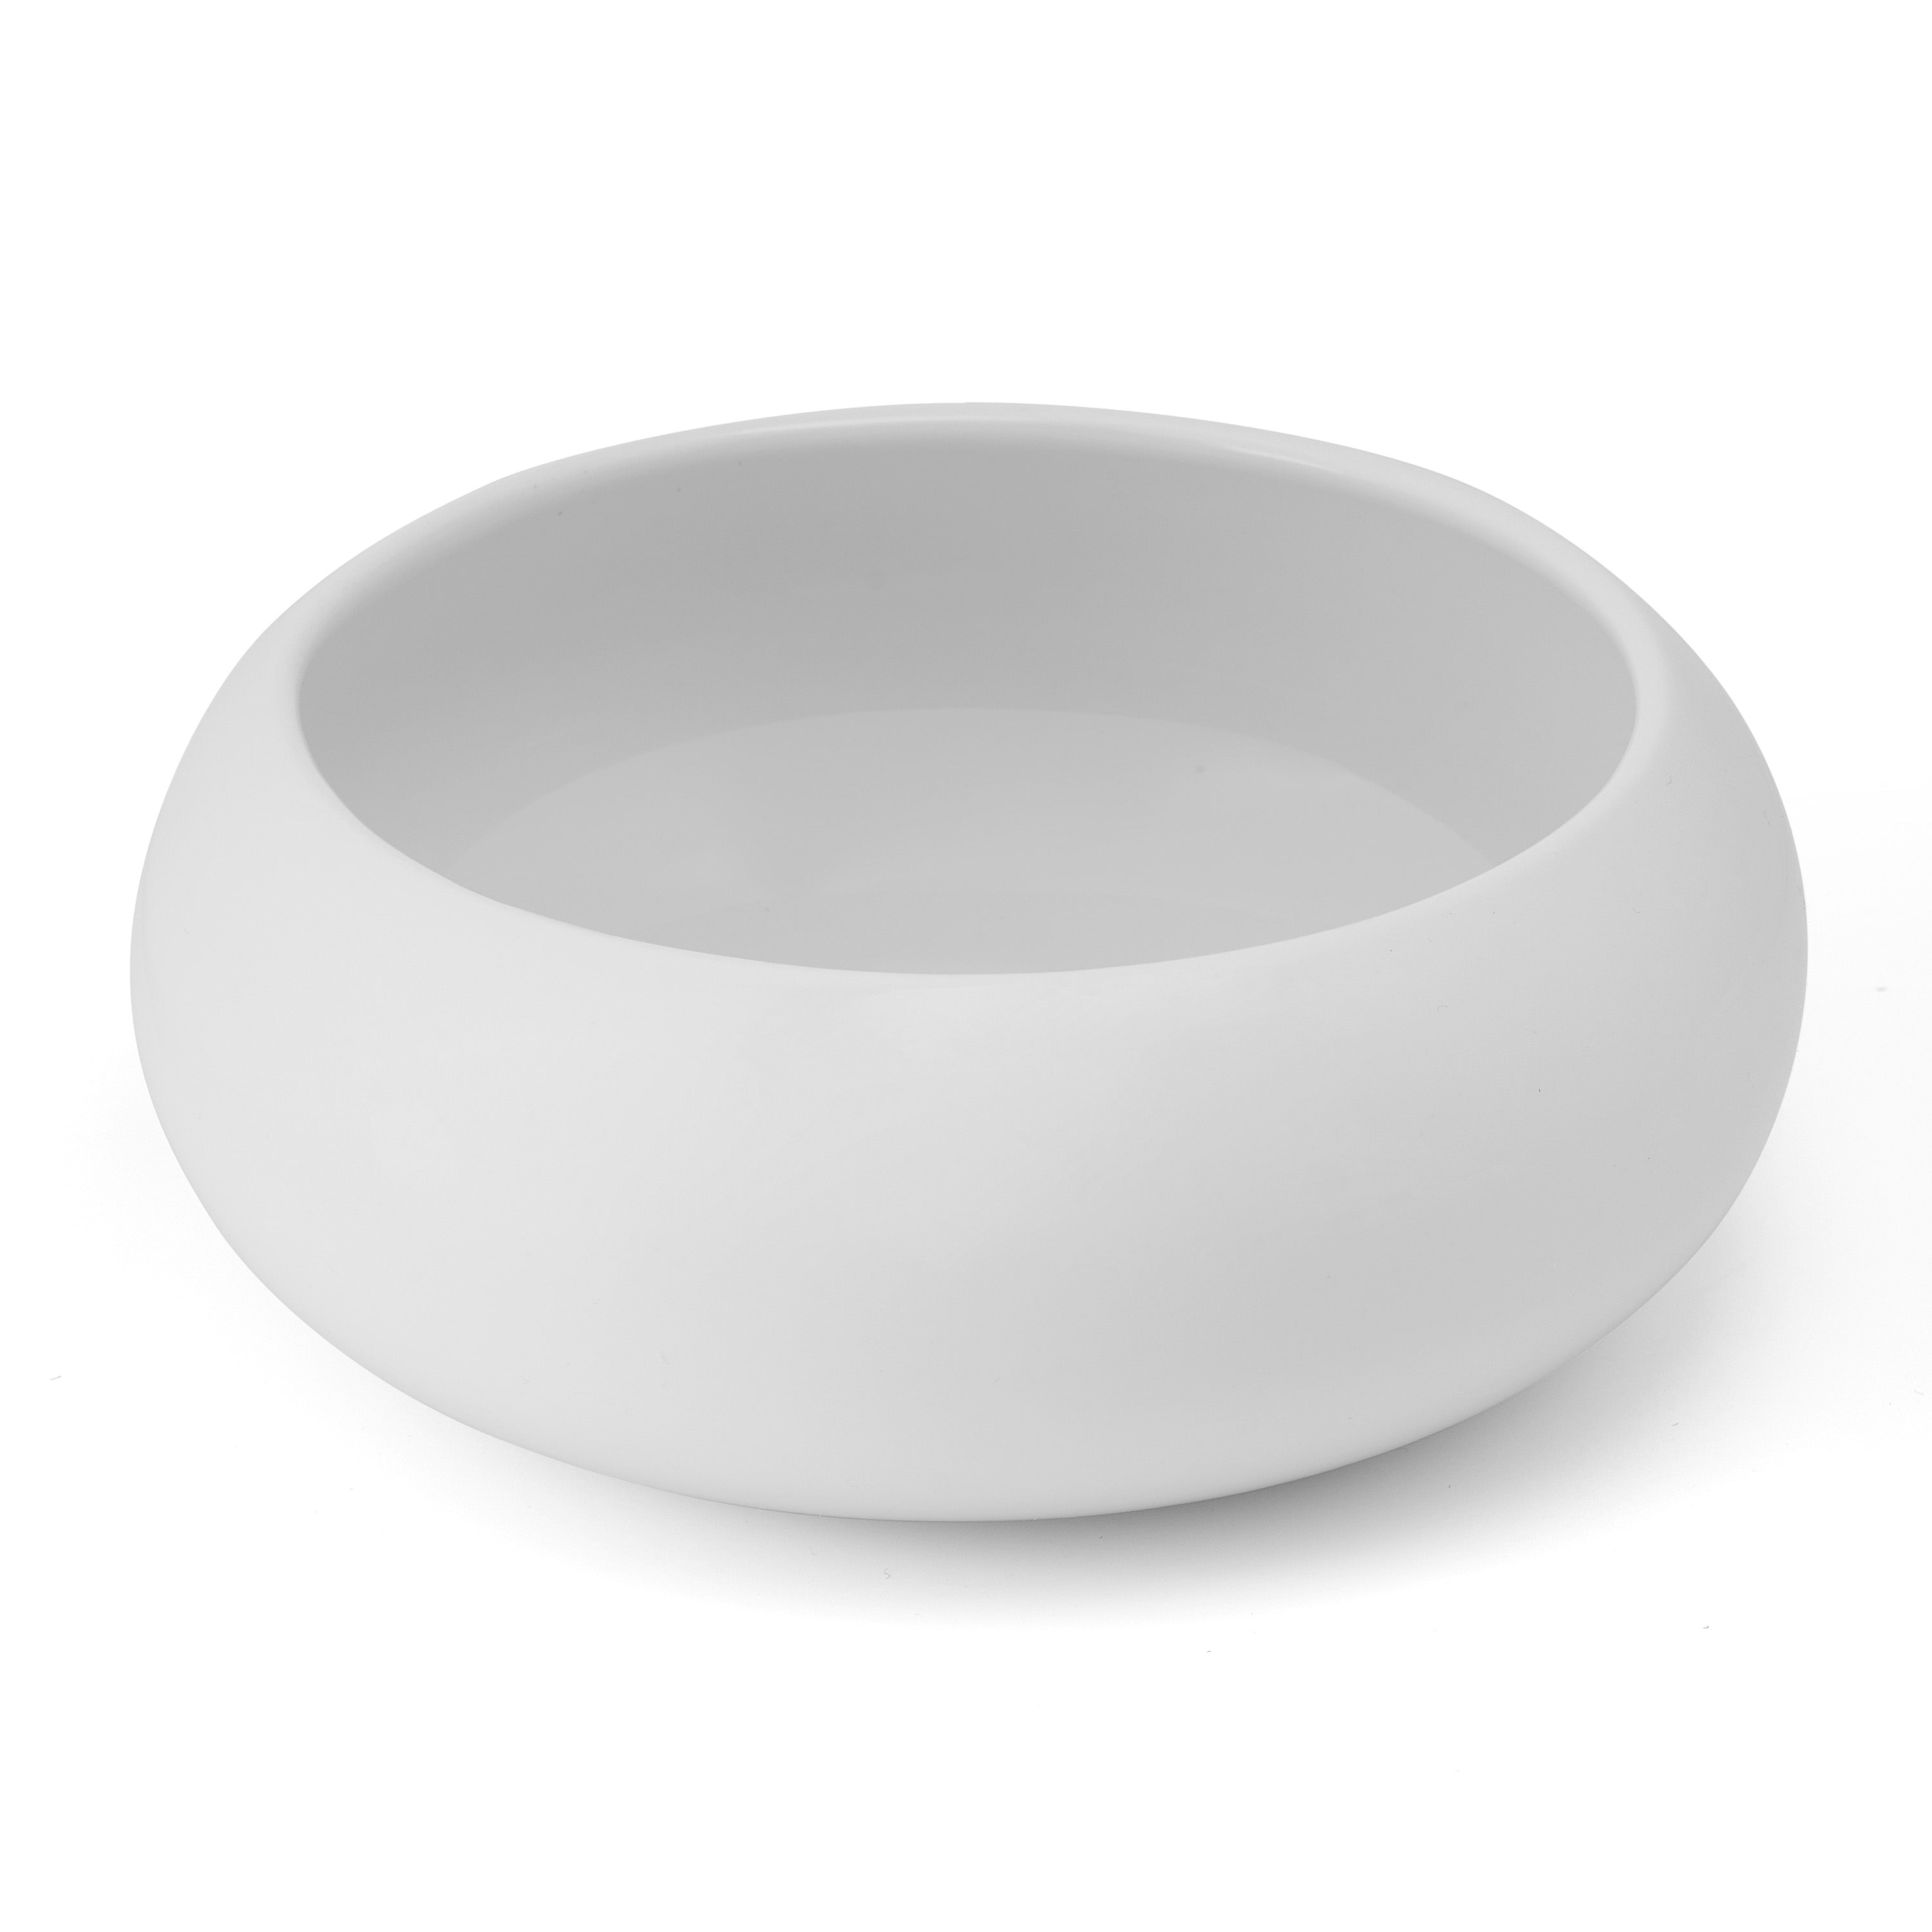 Specials Porcelain Bowl 6.5" / 31oz White